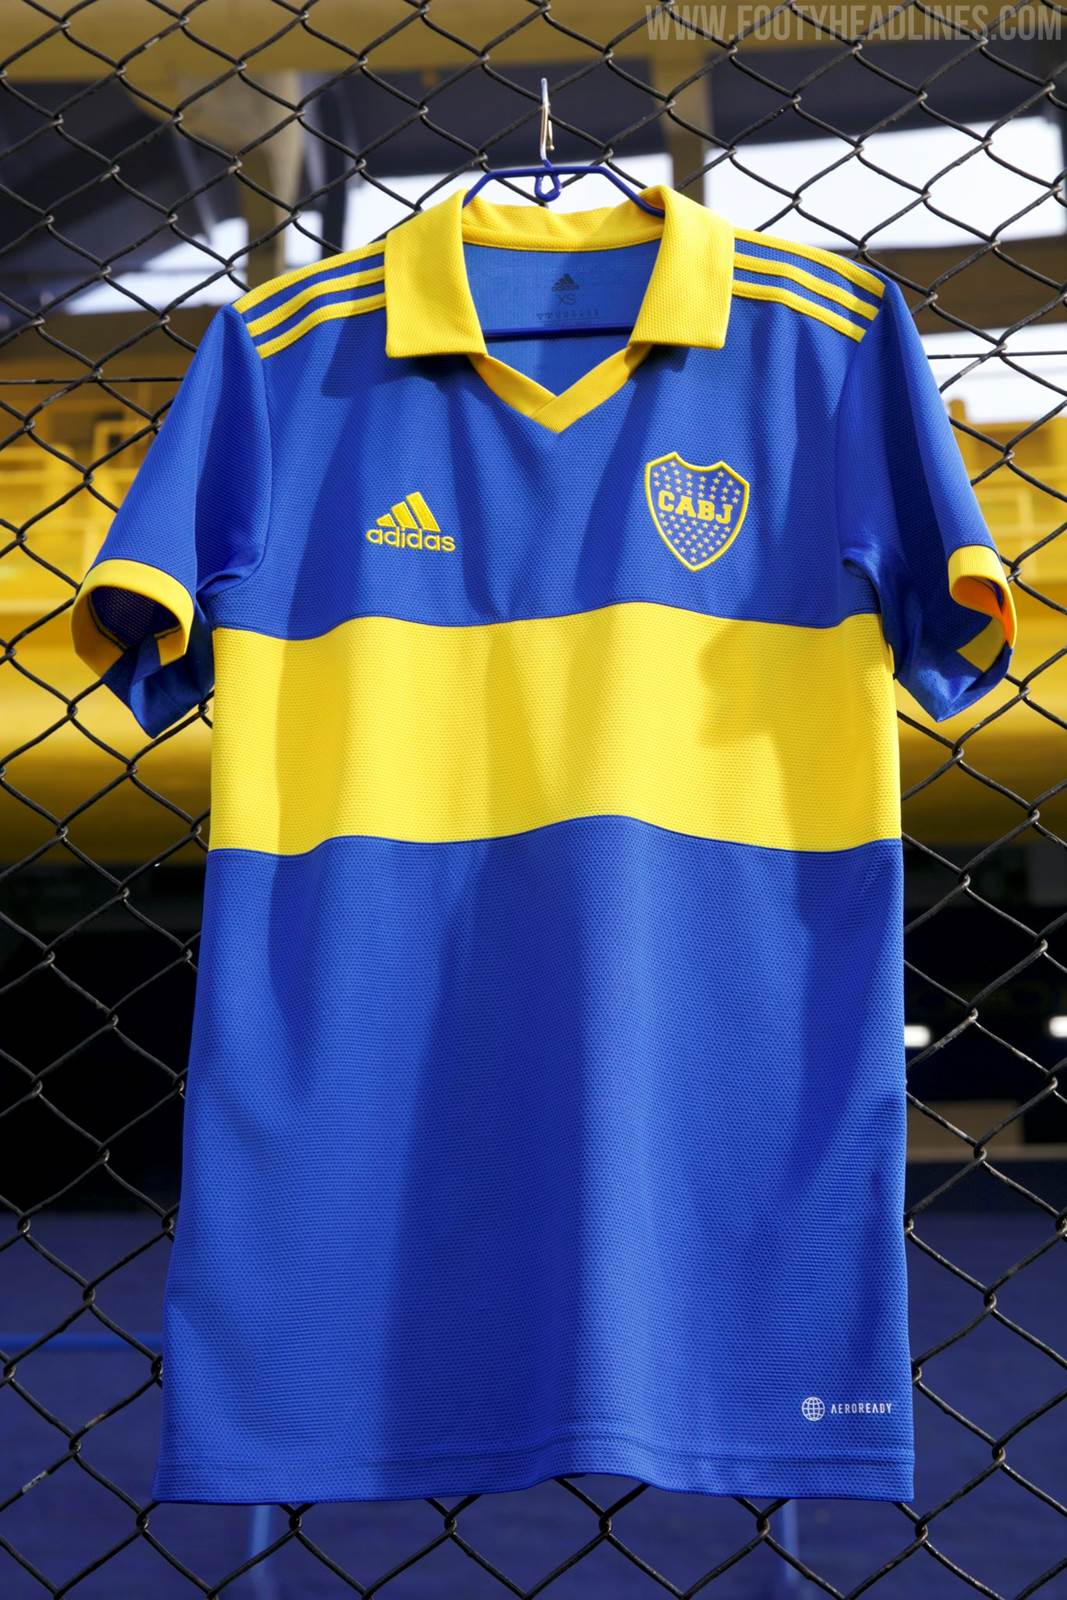 adidas Pay Homage To Maradona With Boca Juniors' 2021/22 Home Shirt